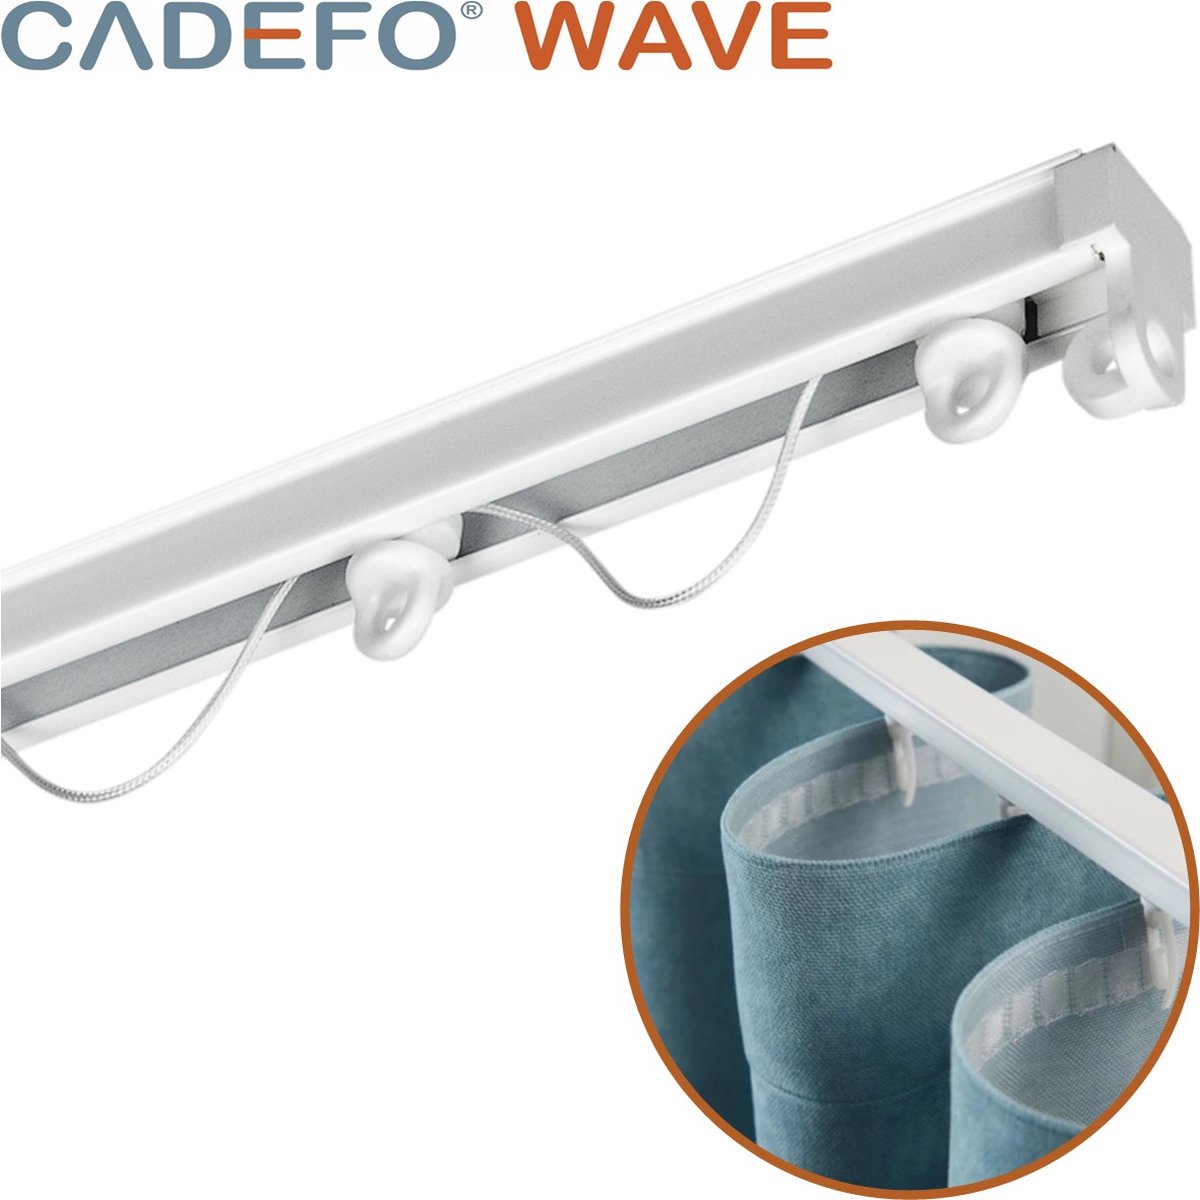 CADEFO WAVE (451 - 500 cm) Gordijnrails - Compleet op maat! - UIT 1 STUK - Leverbaar tot 6 meter - Plafondbevestiging - Lengte 469 cm